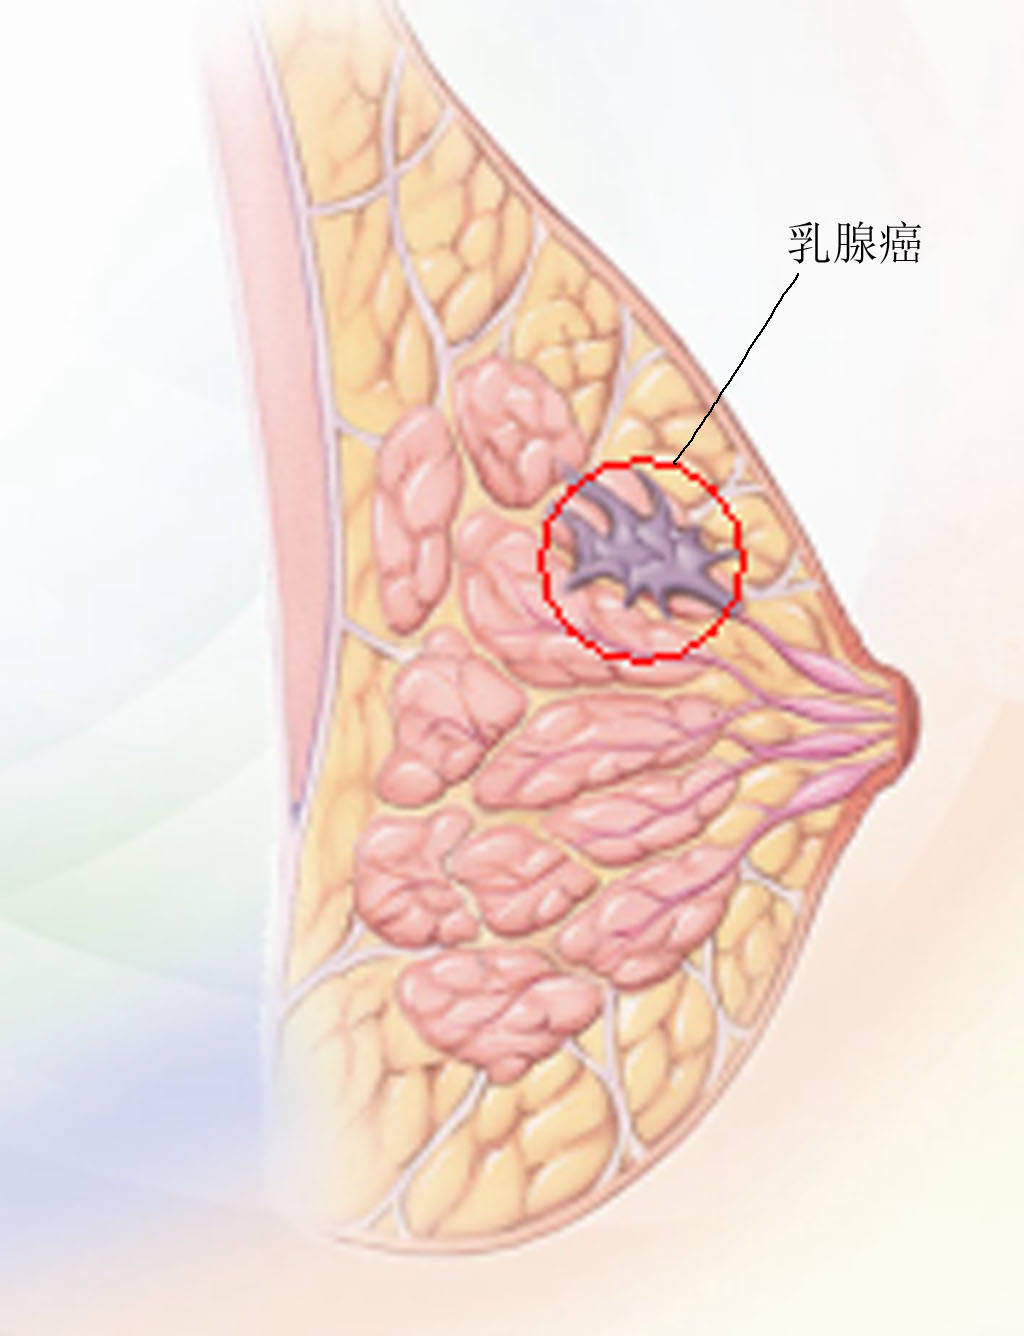 乳腺科宋庆珍专家义诊现场讲解乳腺结节需要手术切除吗